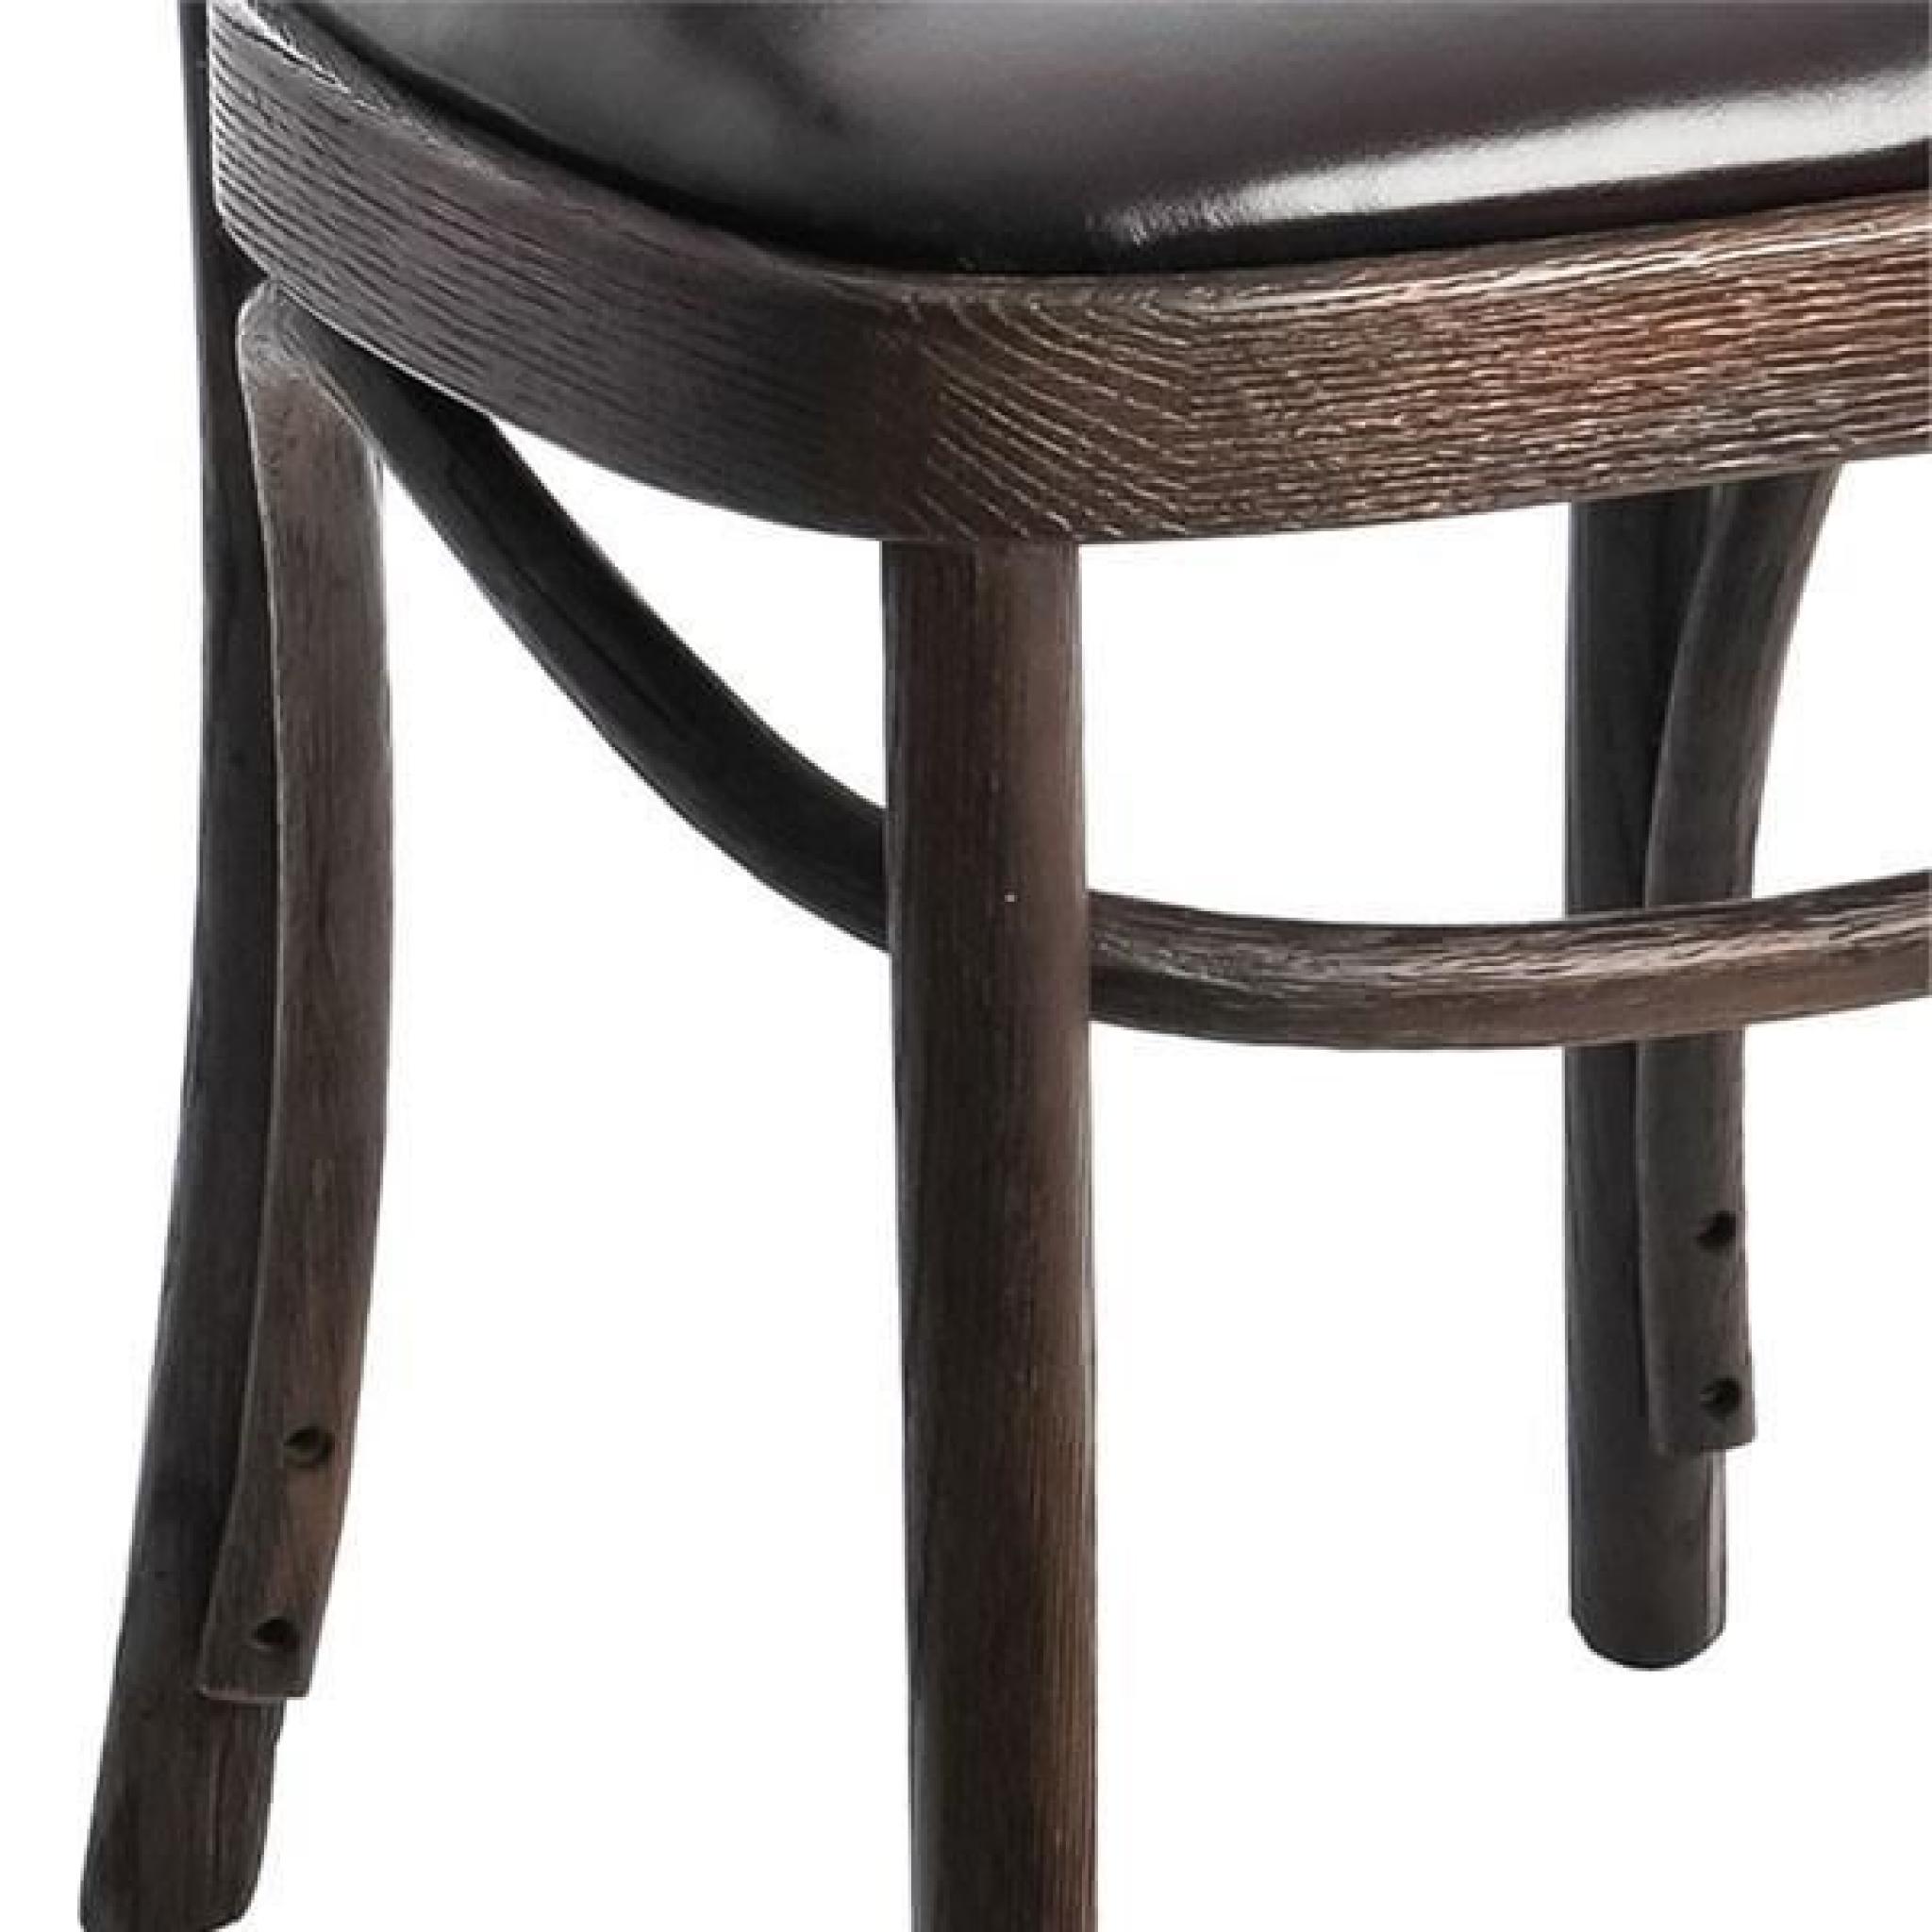 Duo de chaises bois Brun - EMILE  - Taille : L 57 x l 42 x H 77 - Couleur marketing : Marron pas cher